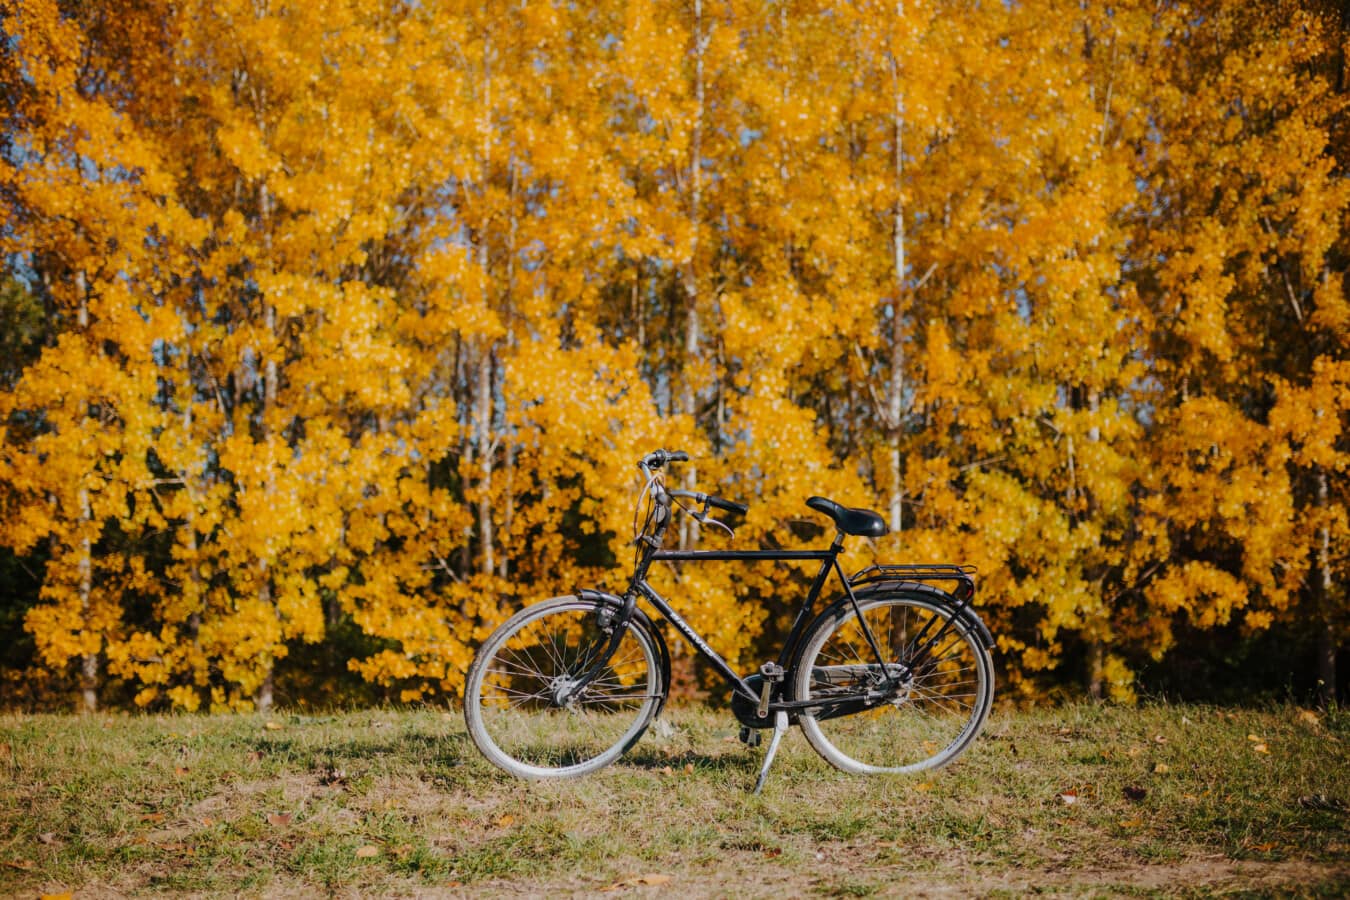 couleurs, jaune orangé, majestueux, forêt, saison de l'automne, vélo, paysage, style ancien, classique, Jaune